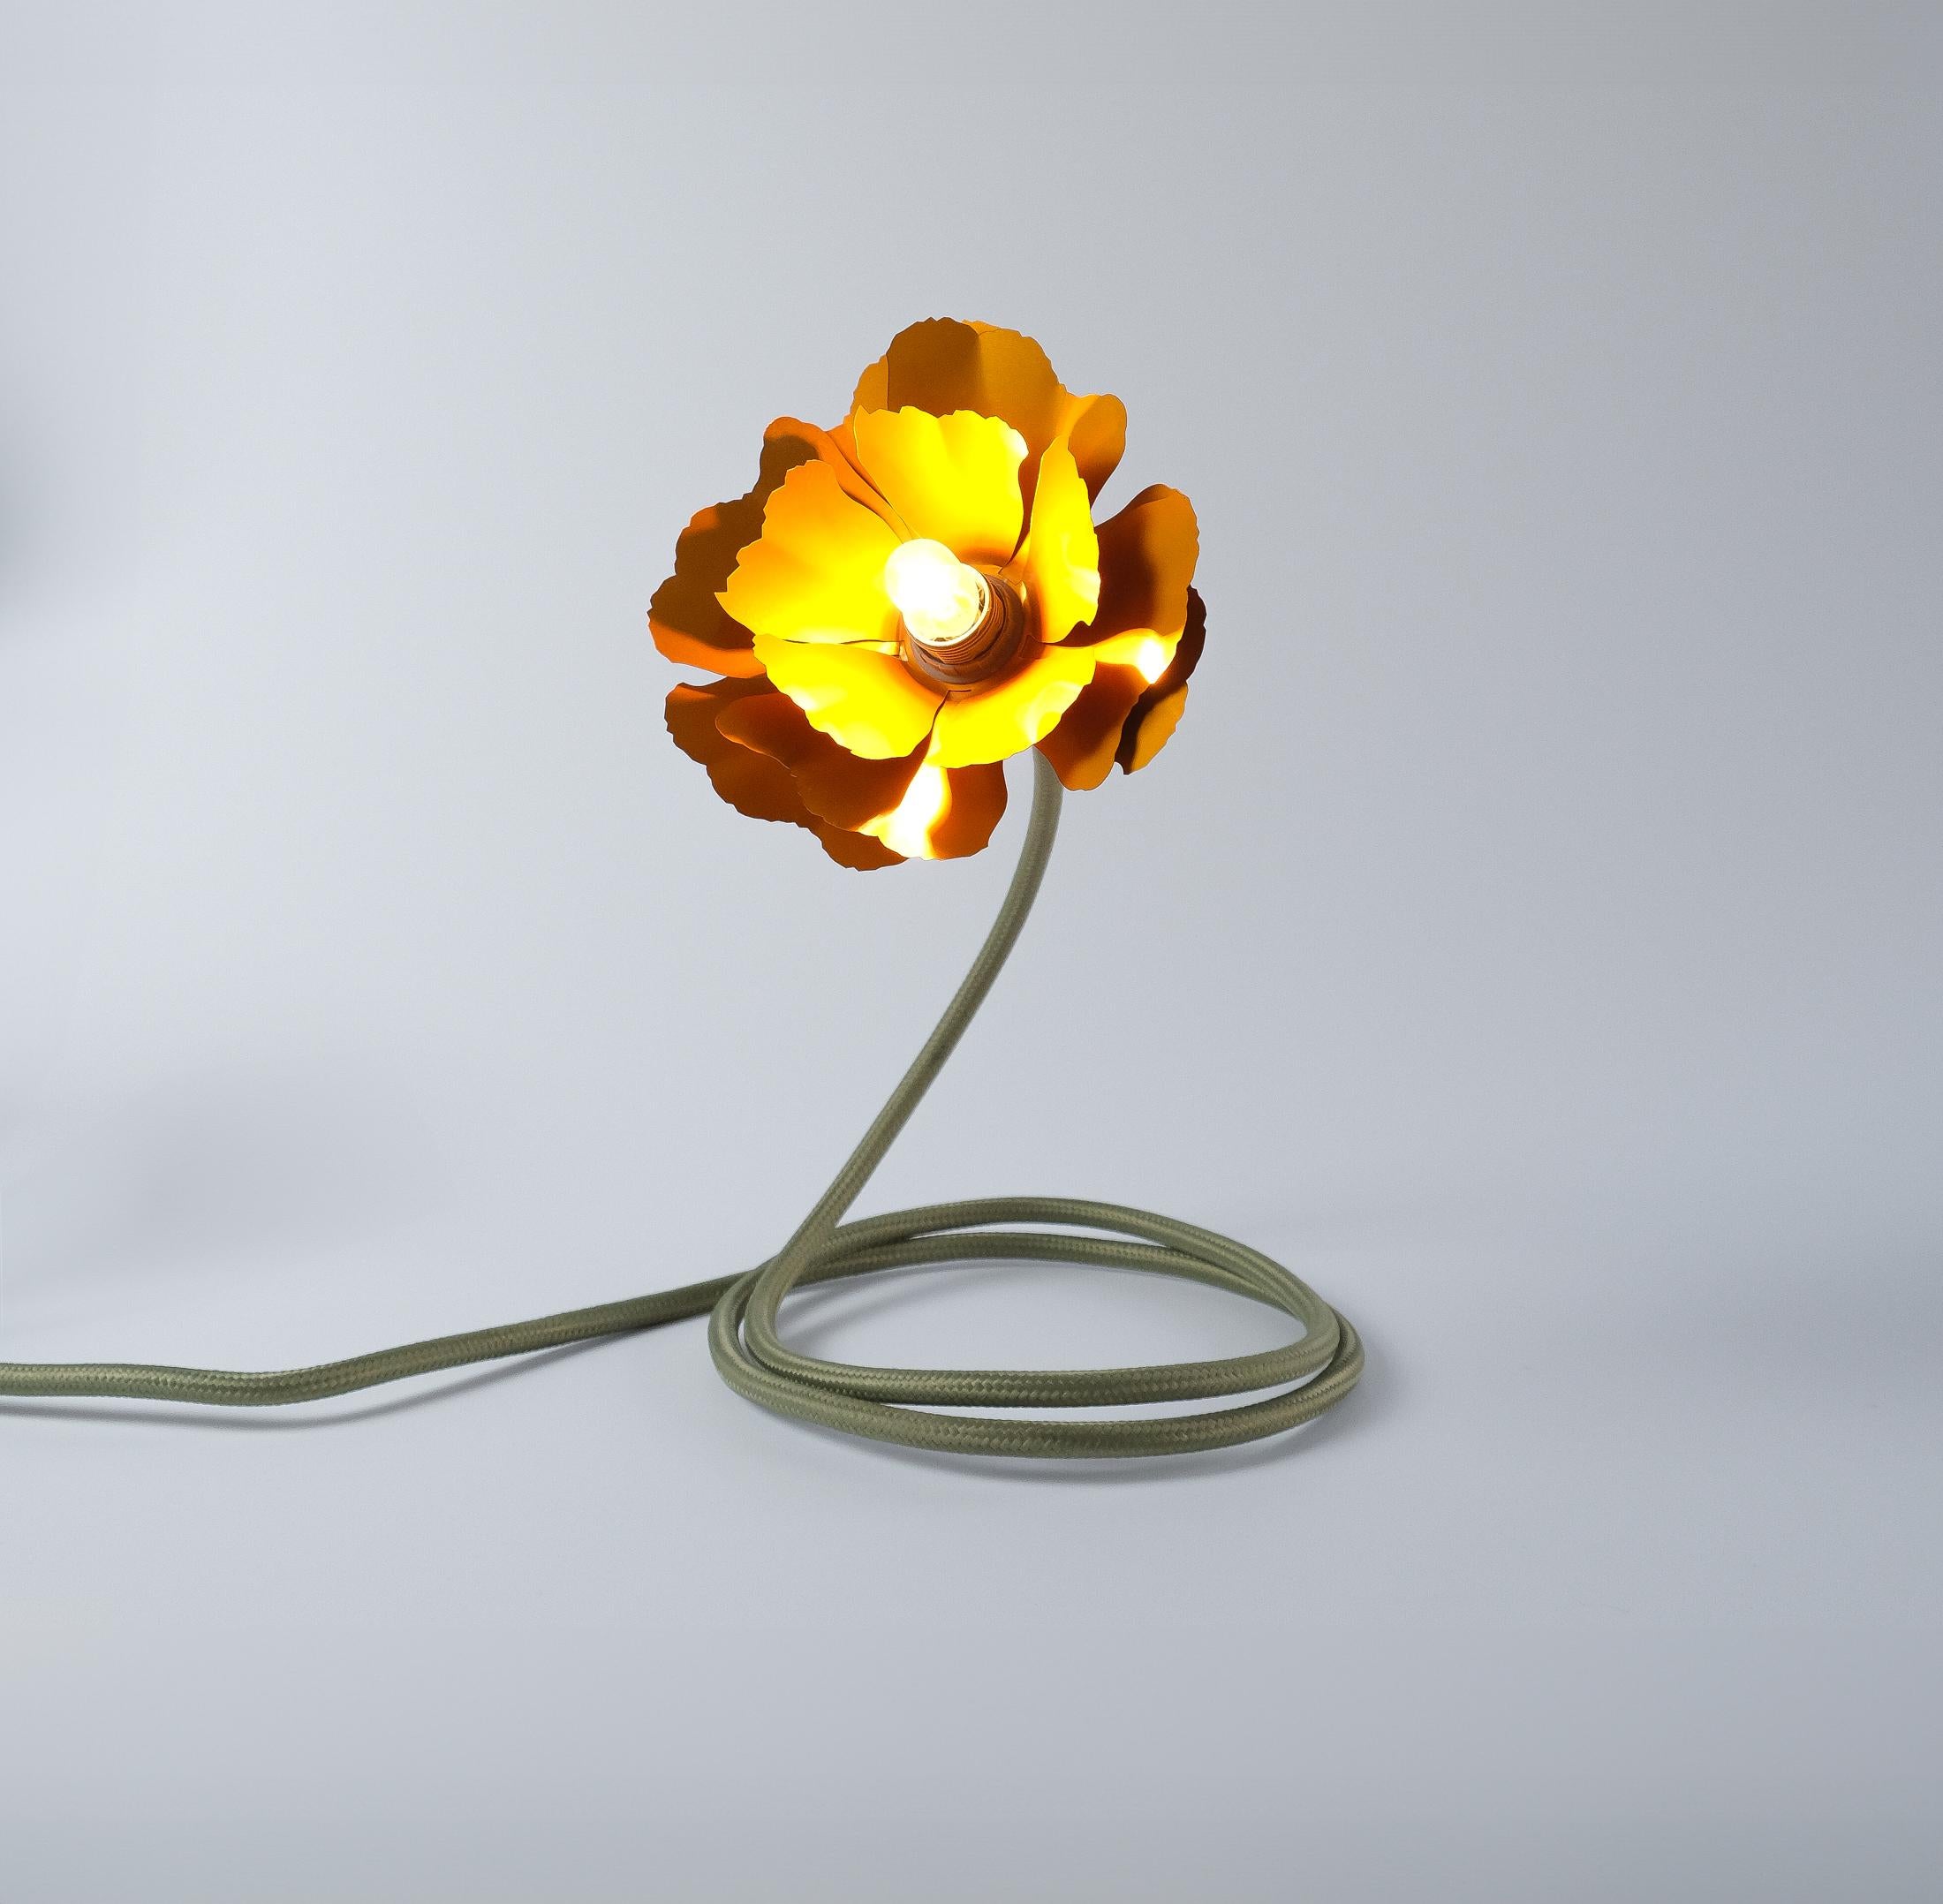 Helena Christensen's Flexible Flower Lamp for Habitat “V.I.P” Collection, 2004 For Sale 2